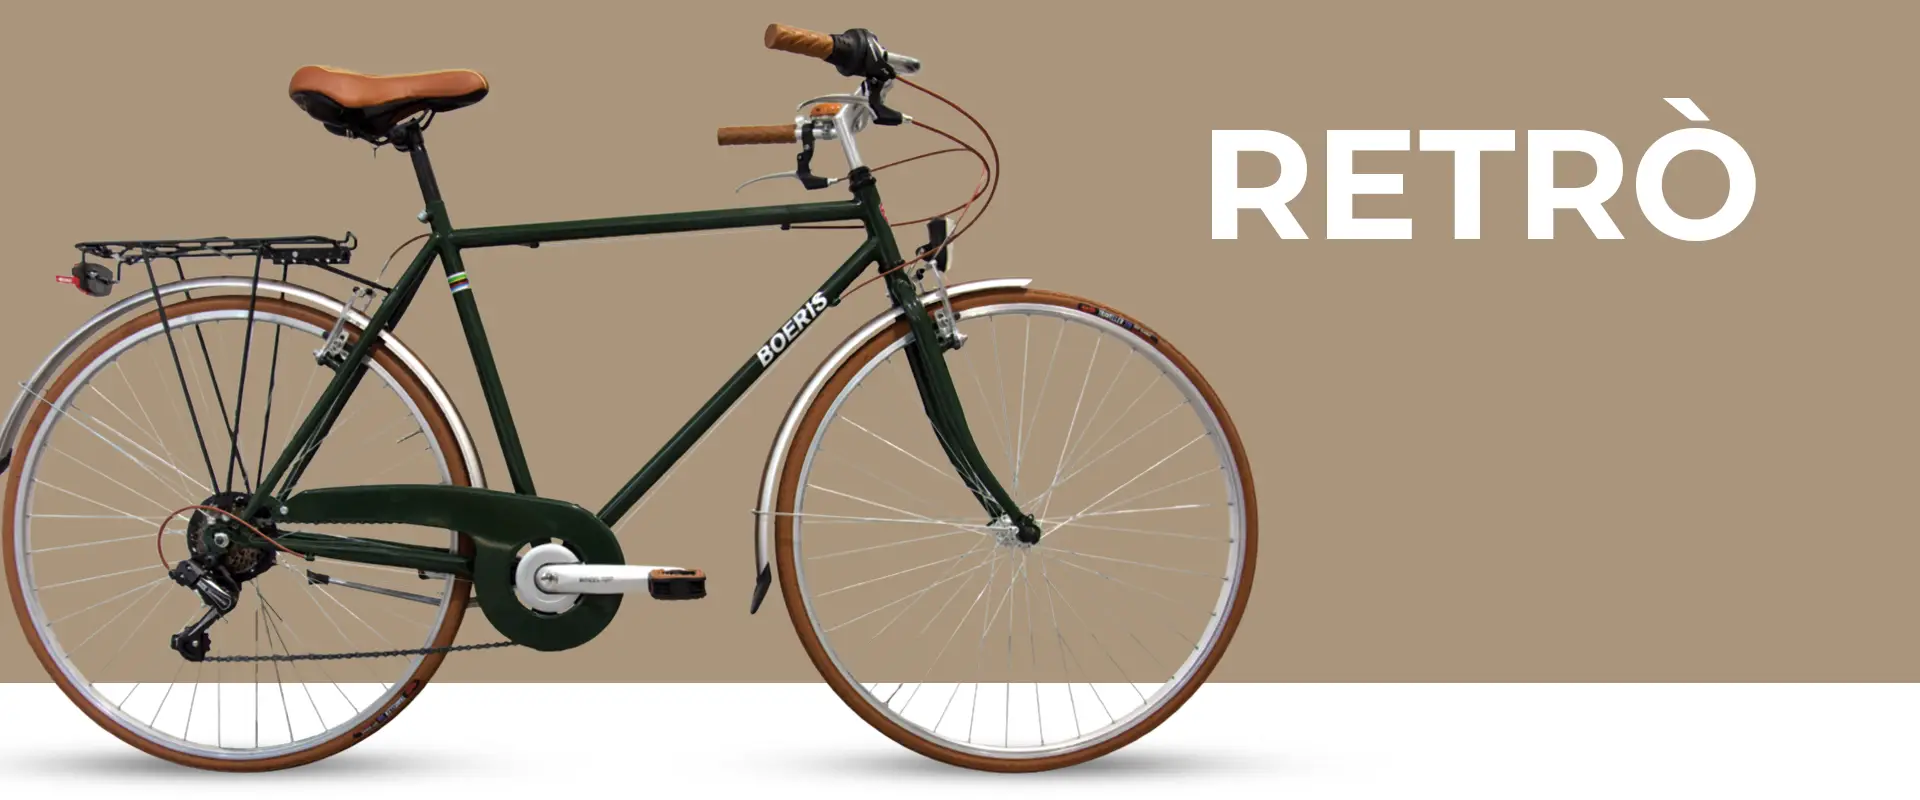 City Bike Retrò colore Verde Boeris Bikes Torino con sfondo beige